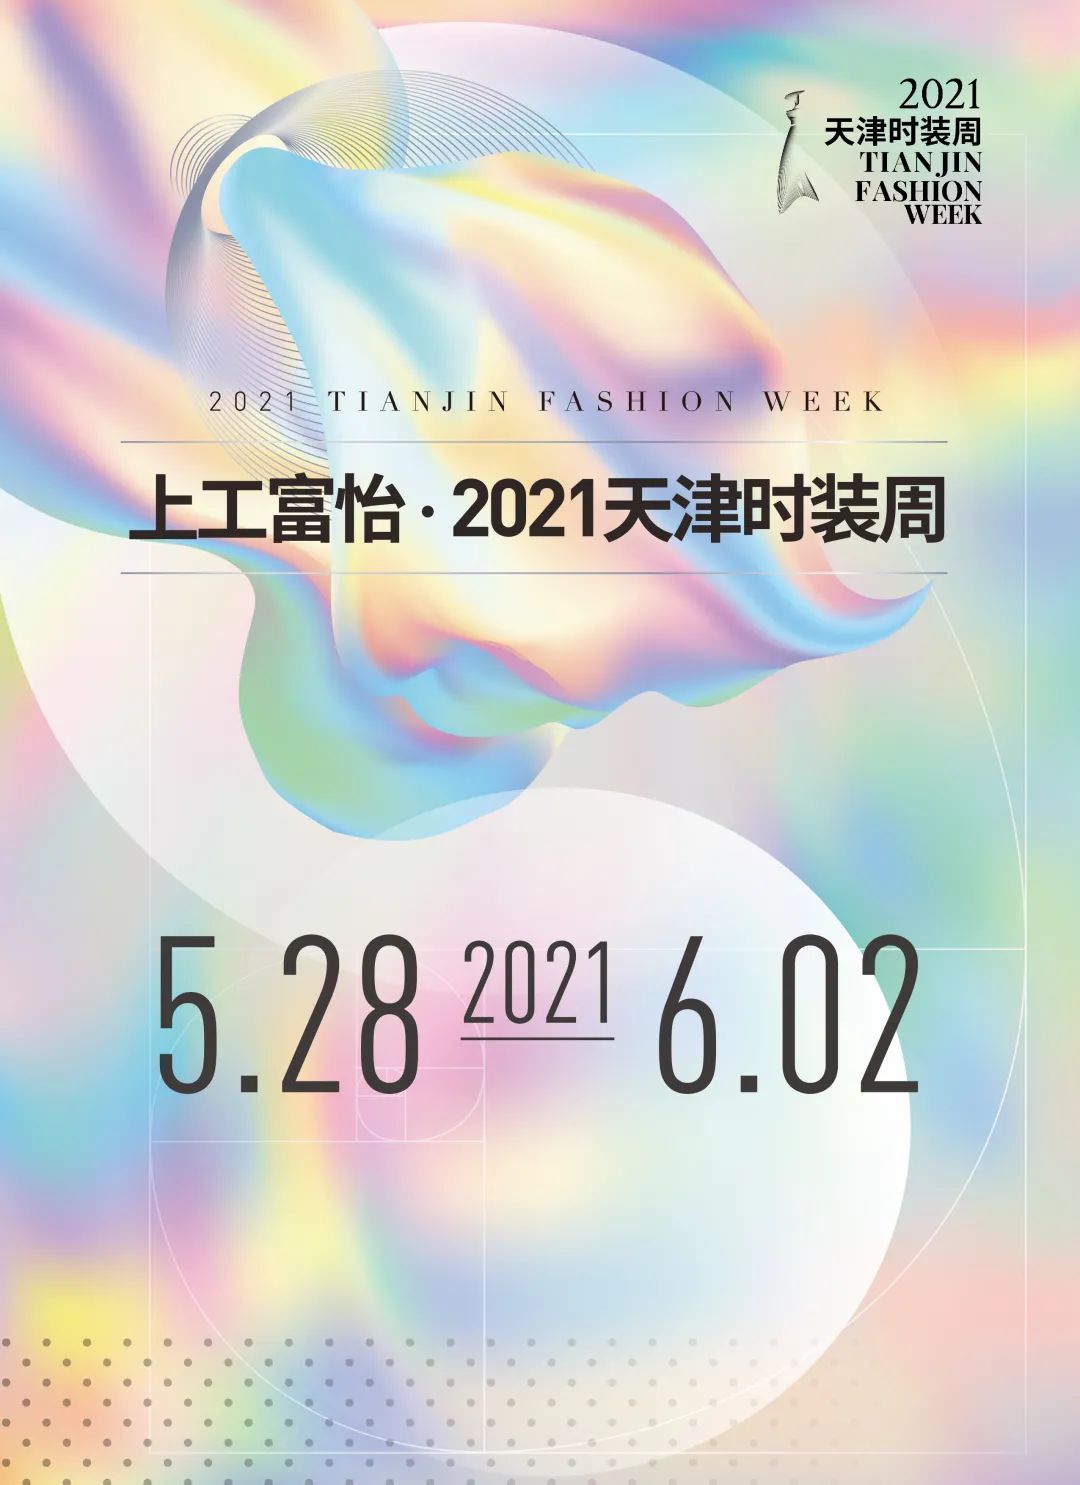 百年风华 时尚焕新——上工富怡·2021天津时装周焕新而来